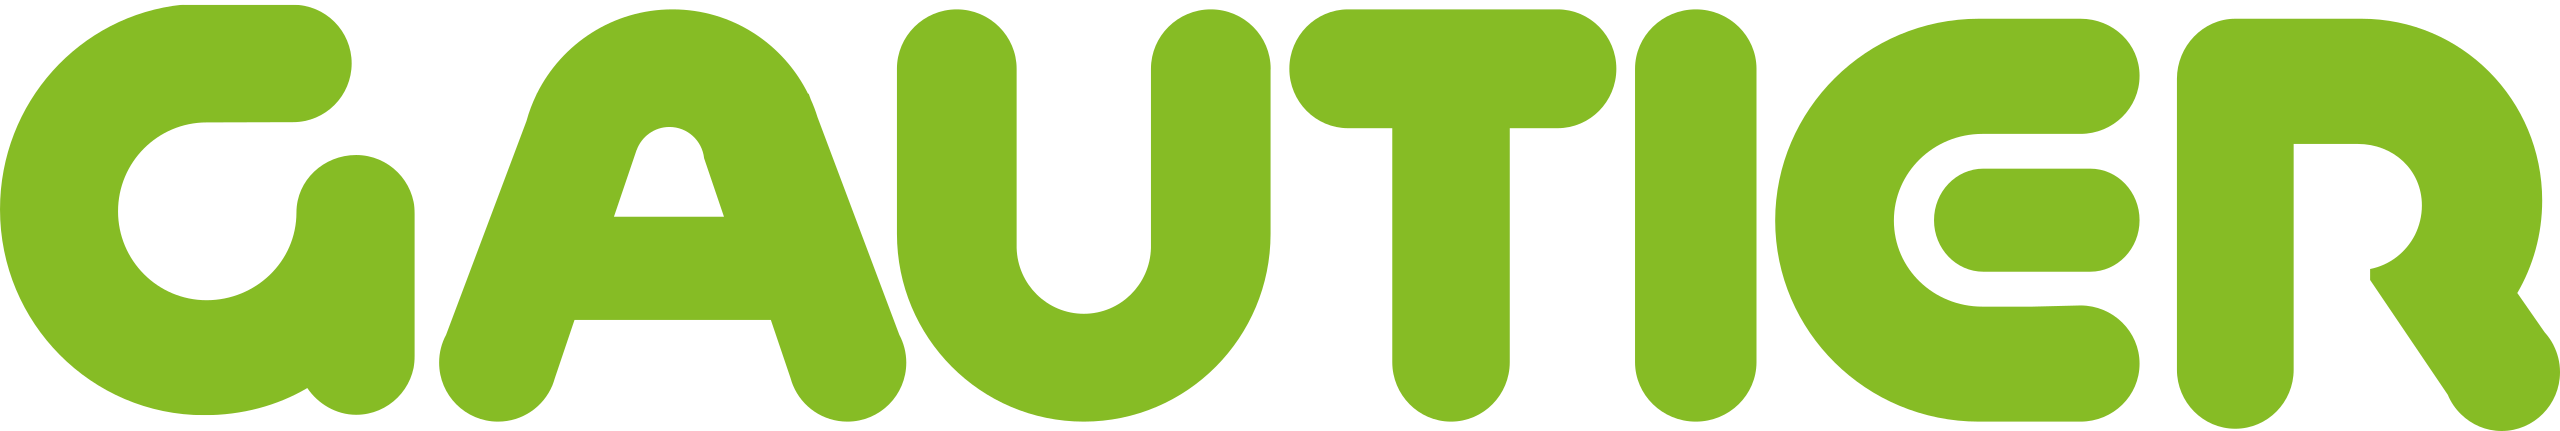 Logo-gautier.svg